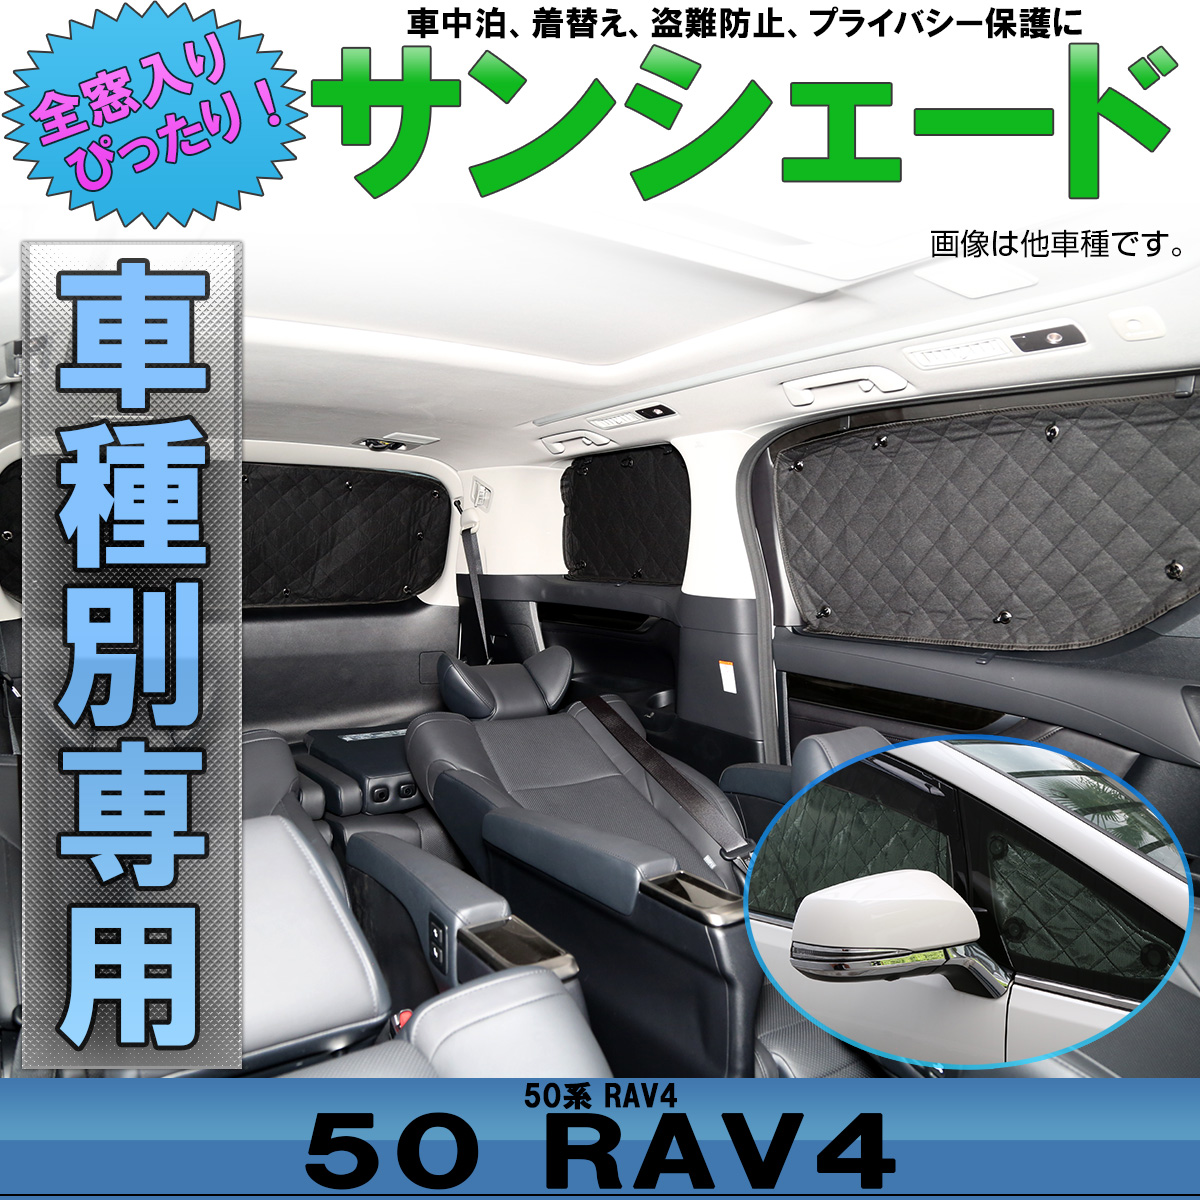 50系 RAV4 サンシェード ラブフォー ラヴフォー 専用設計 全窓用 8枚セット 5層構造 ブラックメッシュ 車中泊 キャンプ S-829